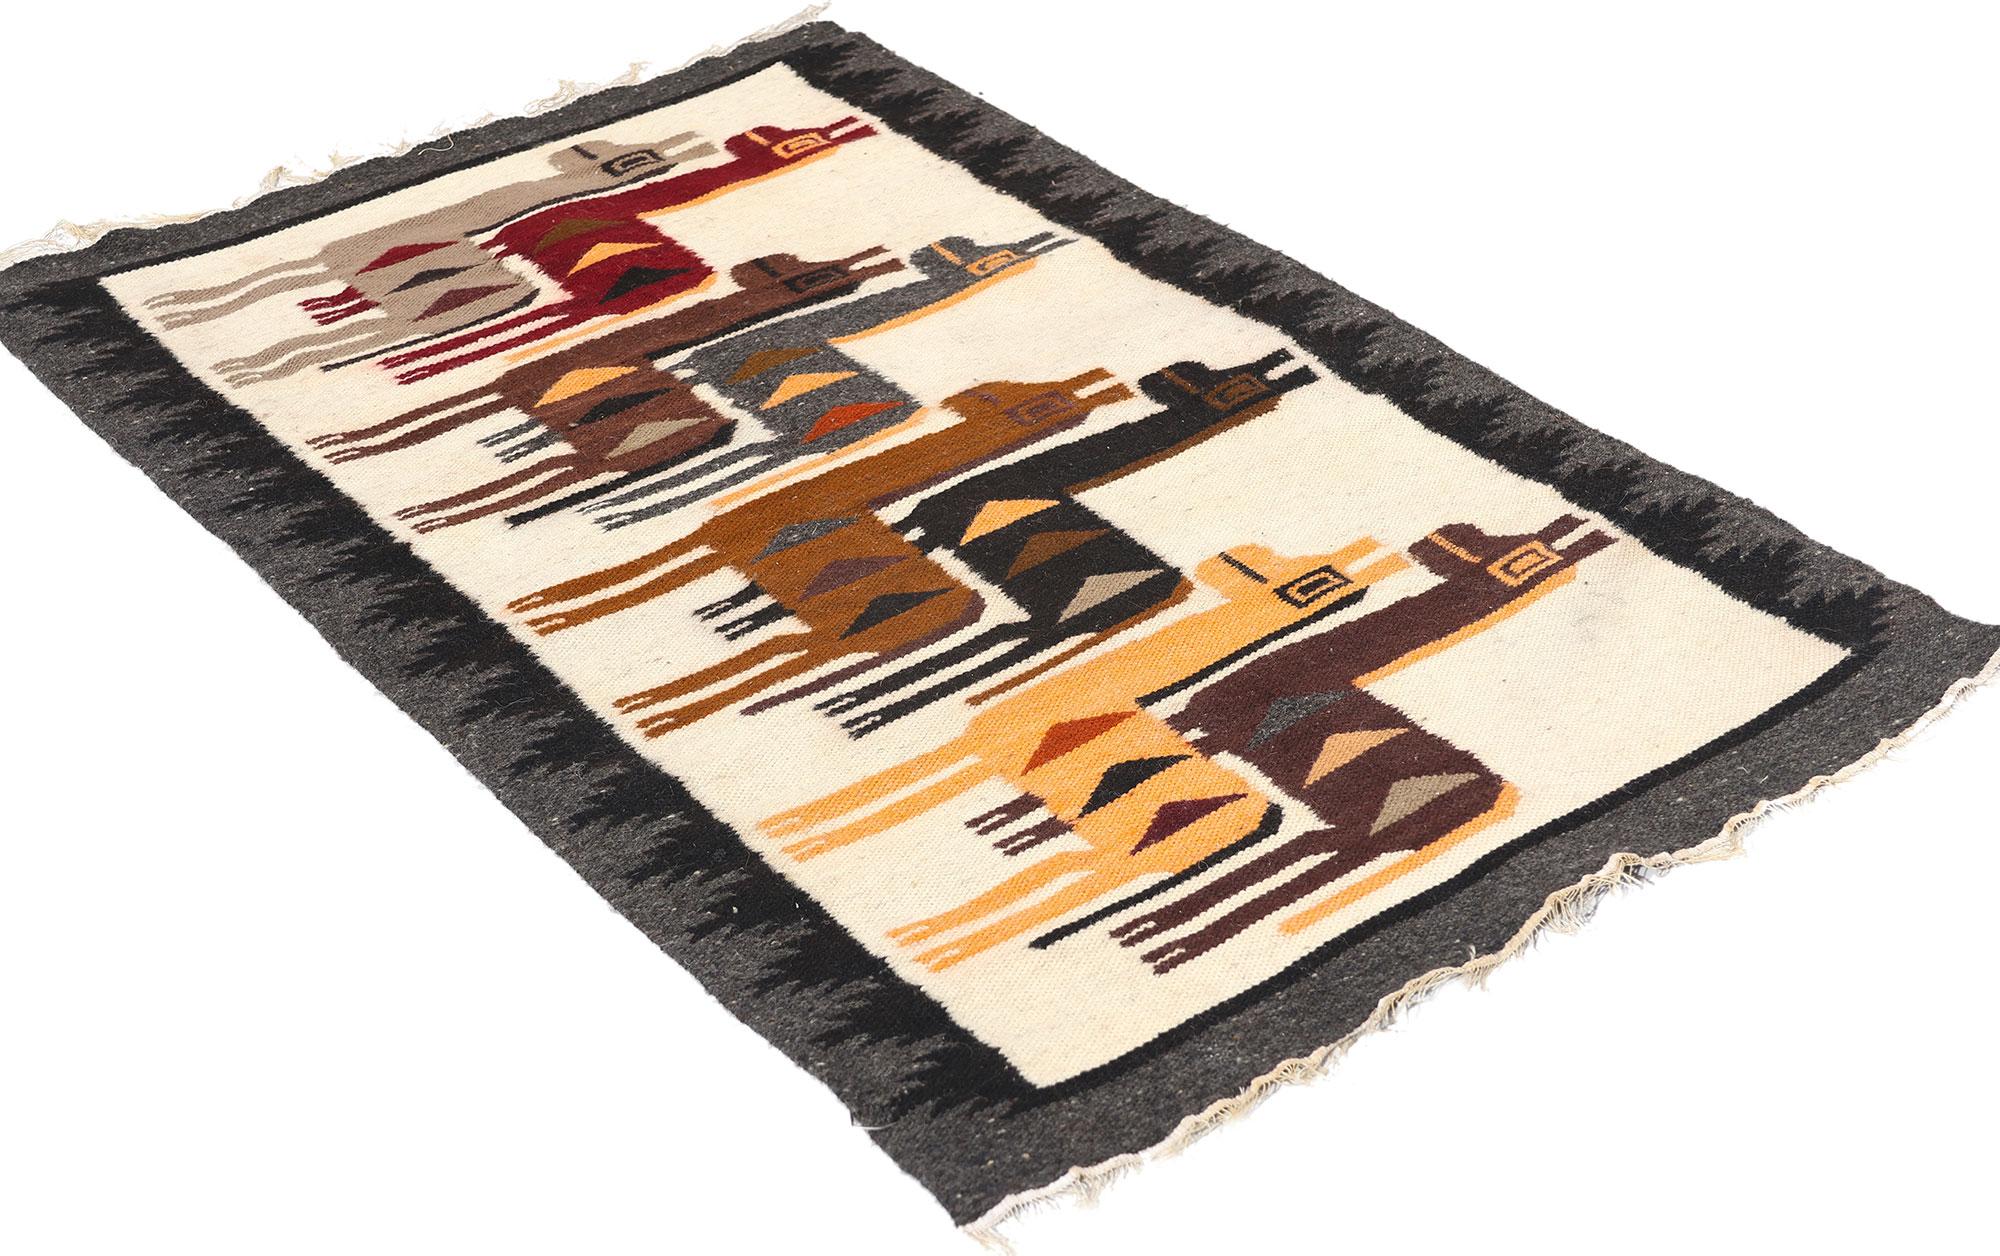 78751 Vintage Peruvian Alpaca Pictorial Kilim Rug, 02'01 x 03'03. Les tapis picturaux péruviens d'Amérique du Sud sont des textiles distinctifs originaires du Pérou, qui associent les techniques de tissage andines traditionnelles à des motifs